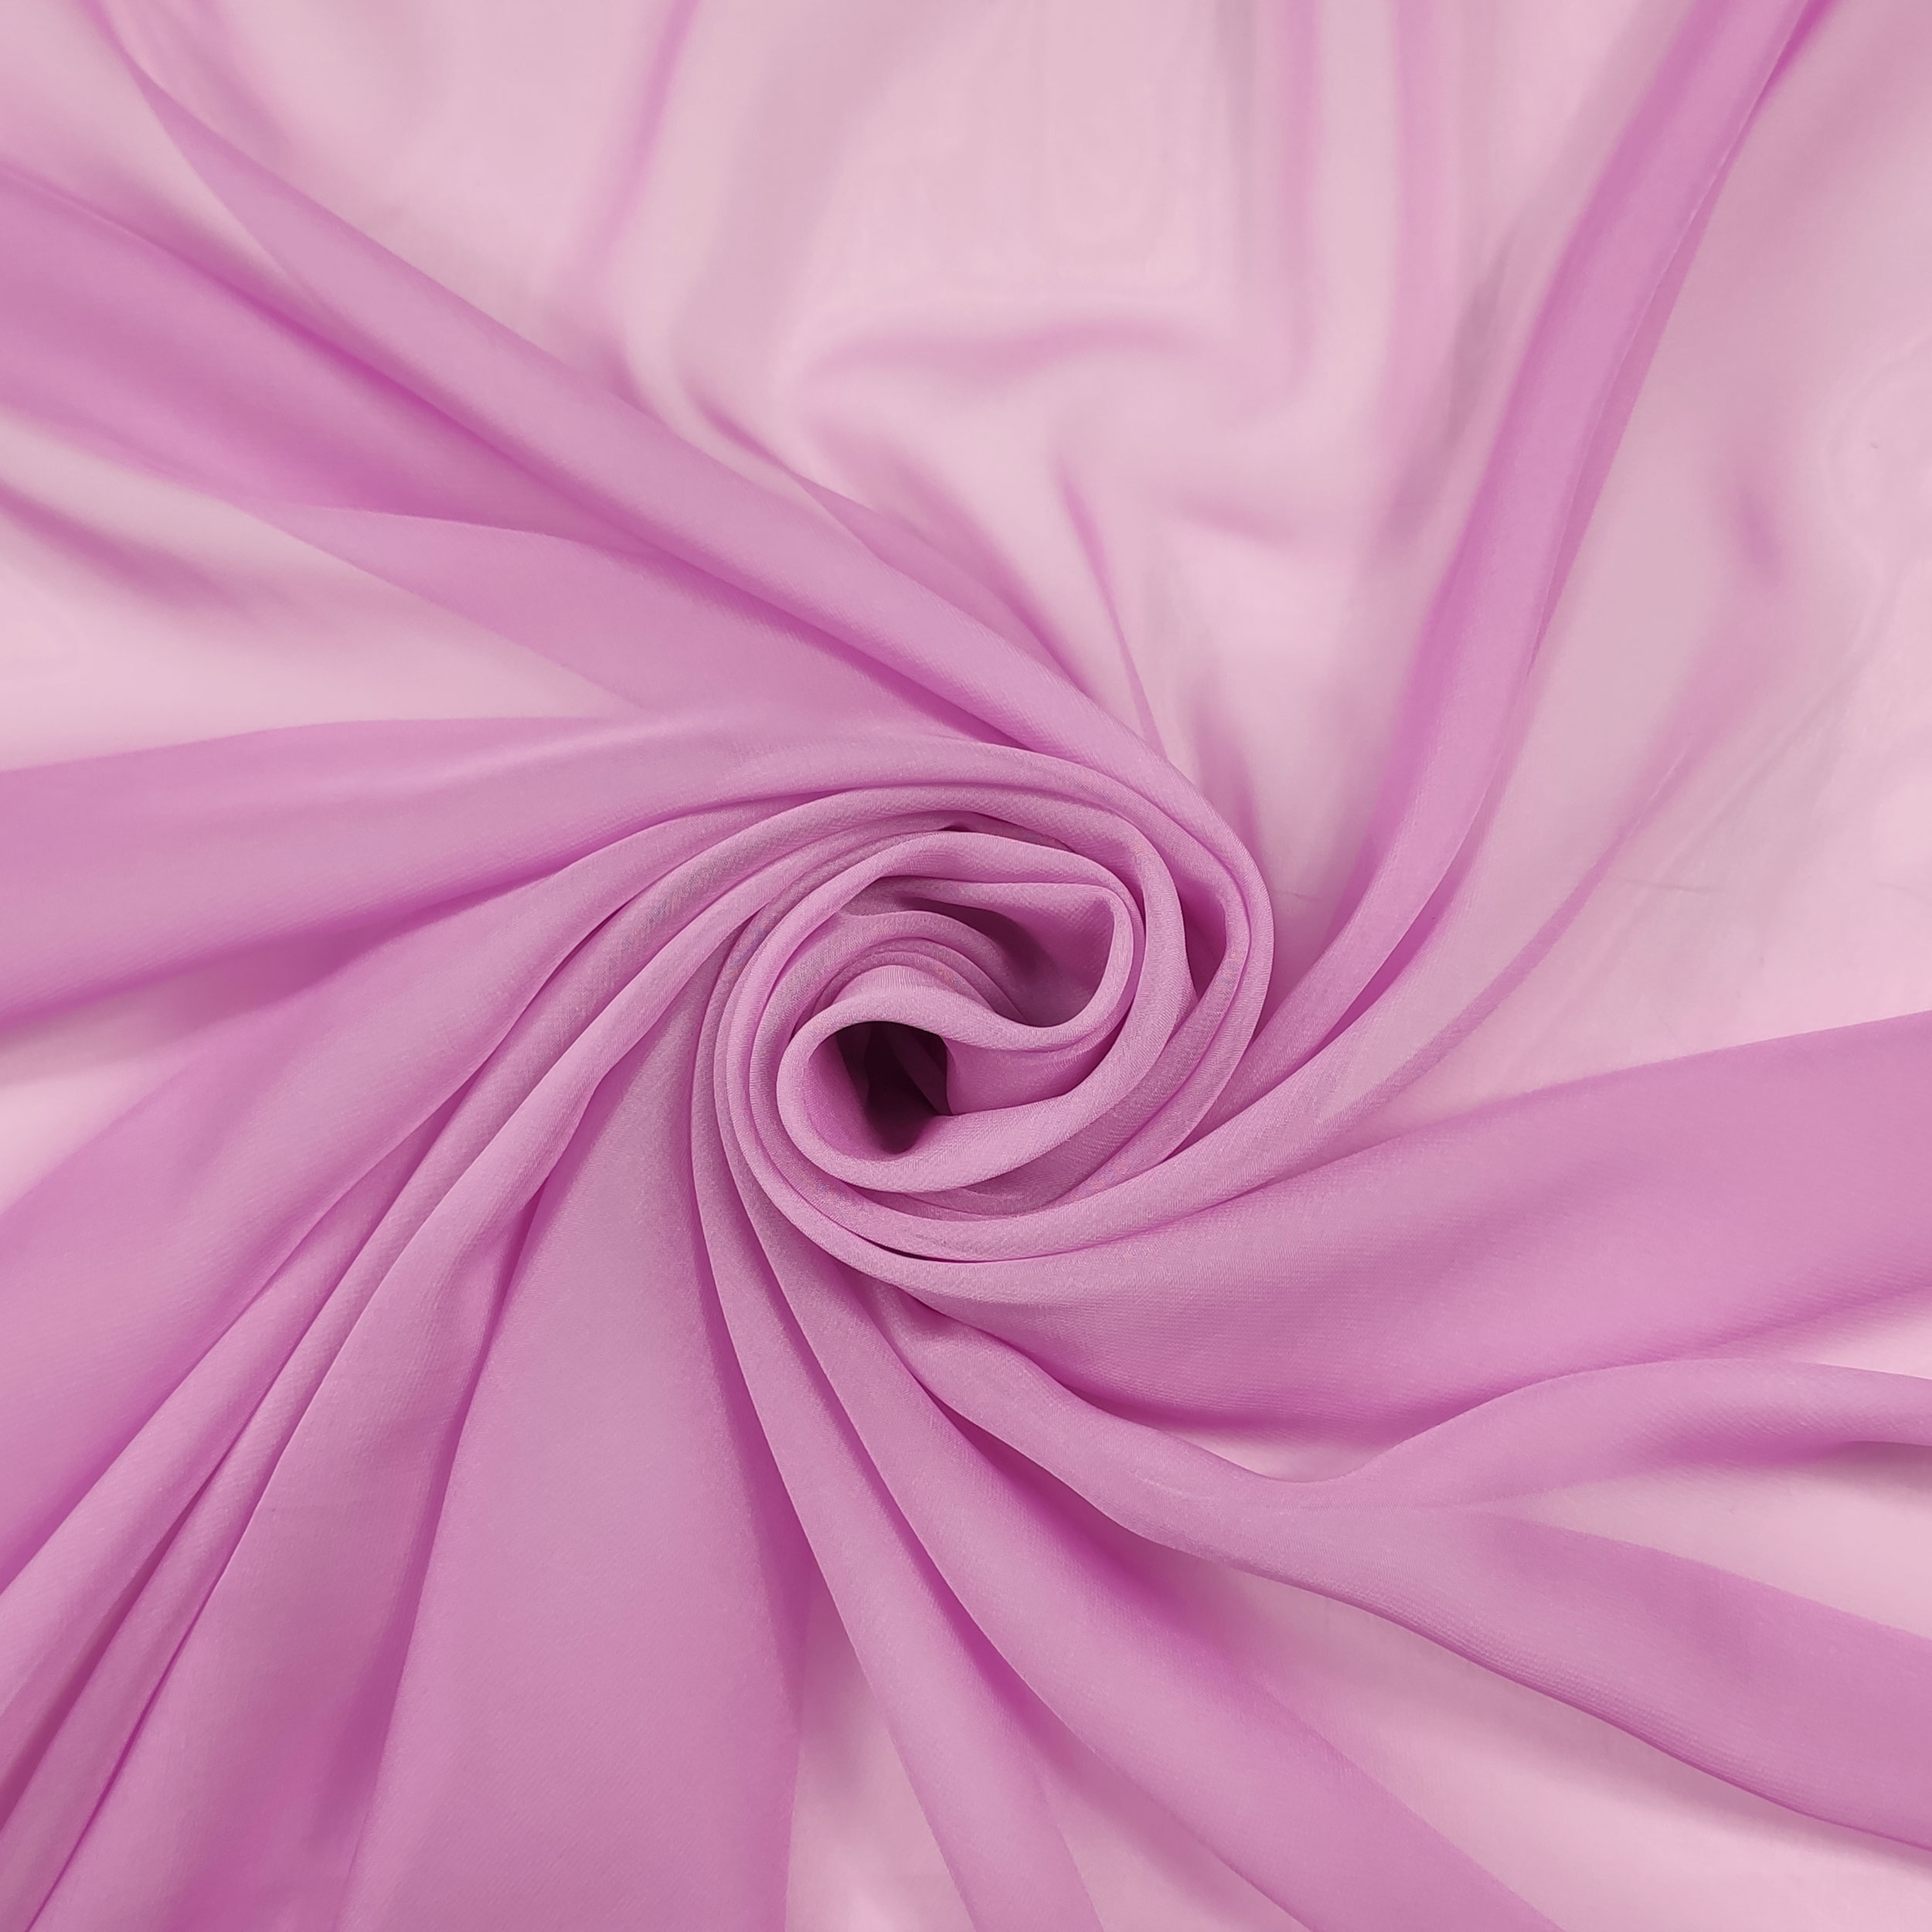 tessuto chiffon rosa scuro